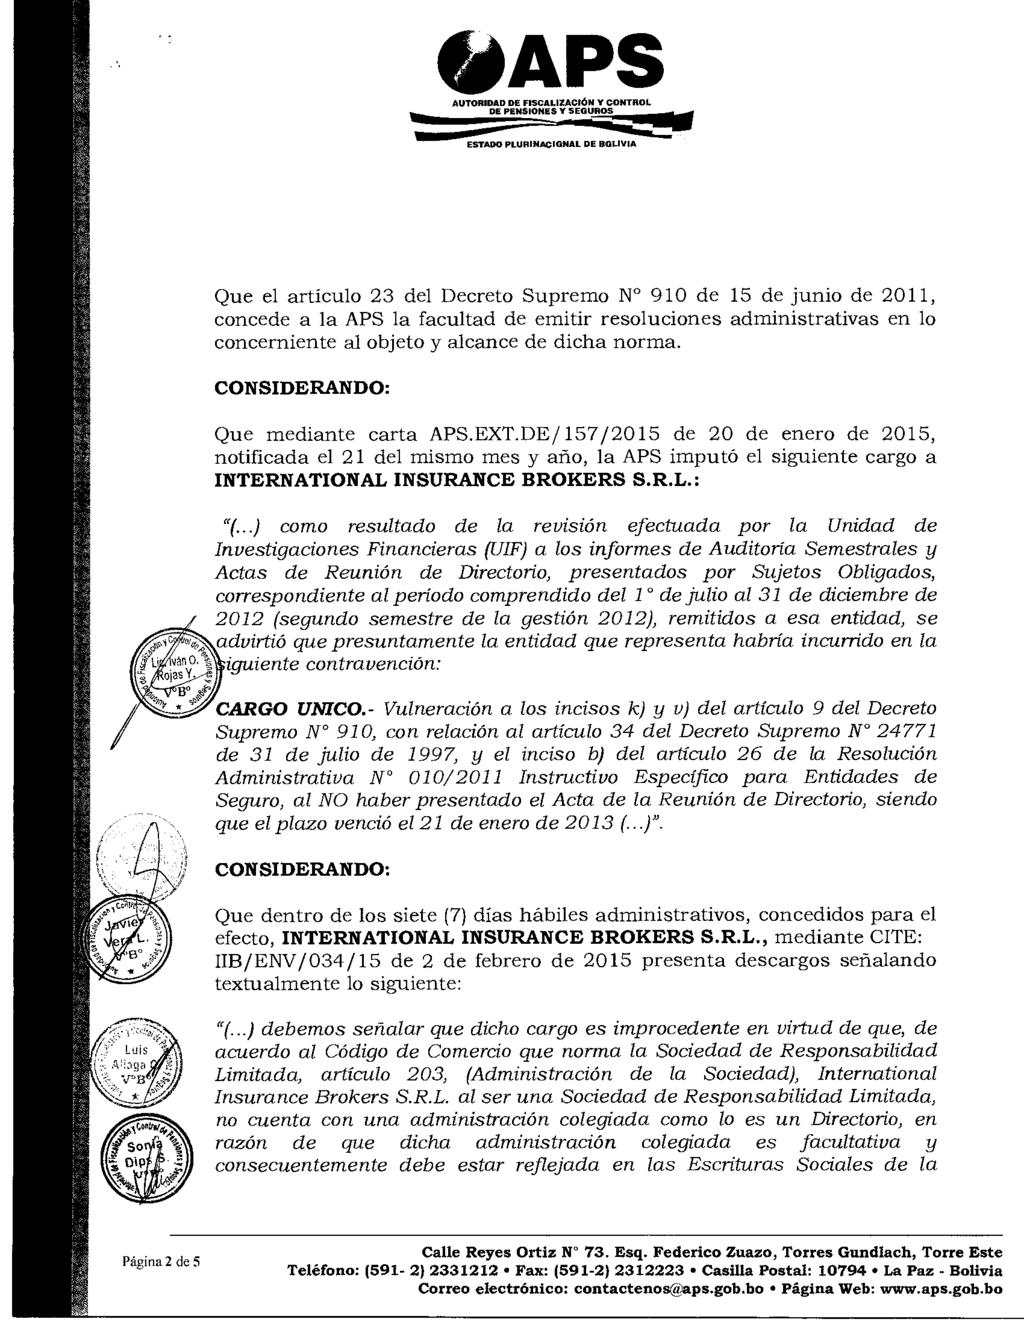 : ESTADO ~APS PLUfllNACIGNAL DE BOLIVIA Que el artículo 23 del Decreto Supremo Nº 910 de 15 de junio de 2011, concede a la APS la facultad de emitir resoluciones administrativas en lo concerniente al